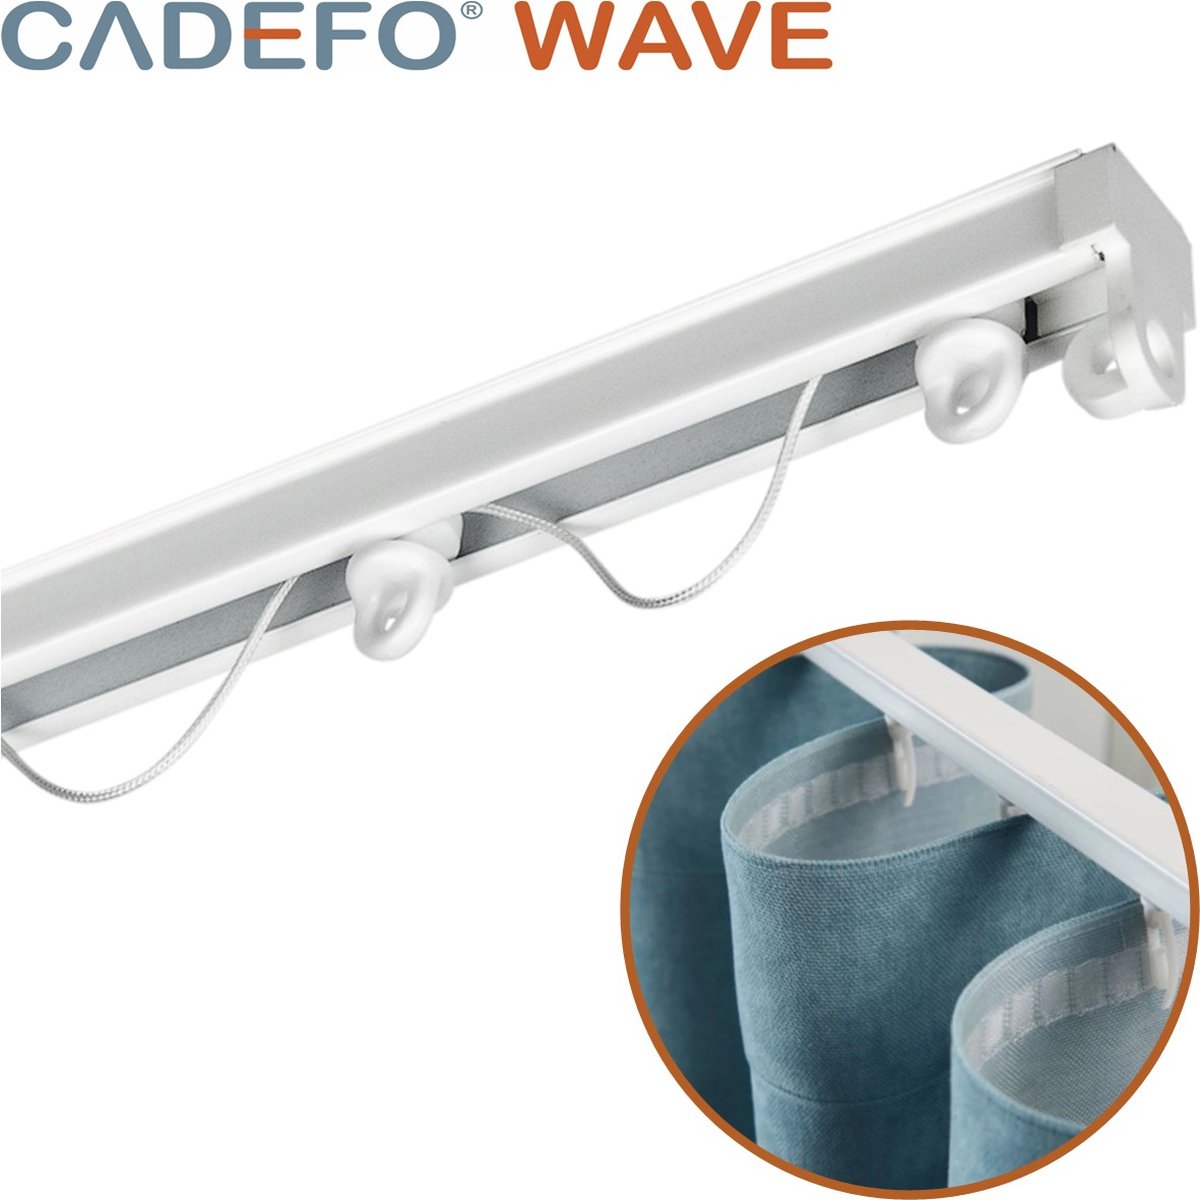 CADEFO WAVE (301 - 350 cm) Gordijnrails - Compleet op maat! - UIT 1 STUK - Leverbaar tot 6 meter - Plafondbevestiging - Lengte 350 cm - 3,5 meter